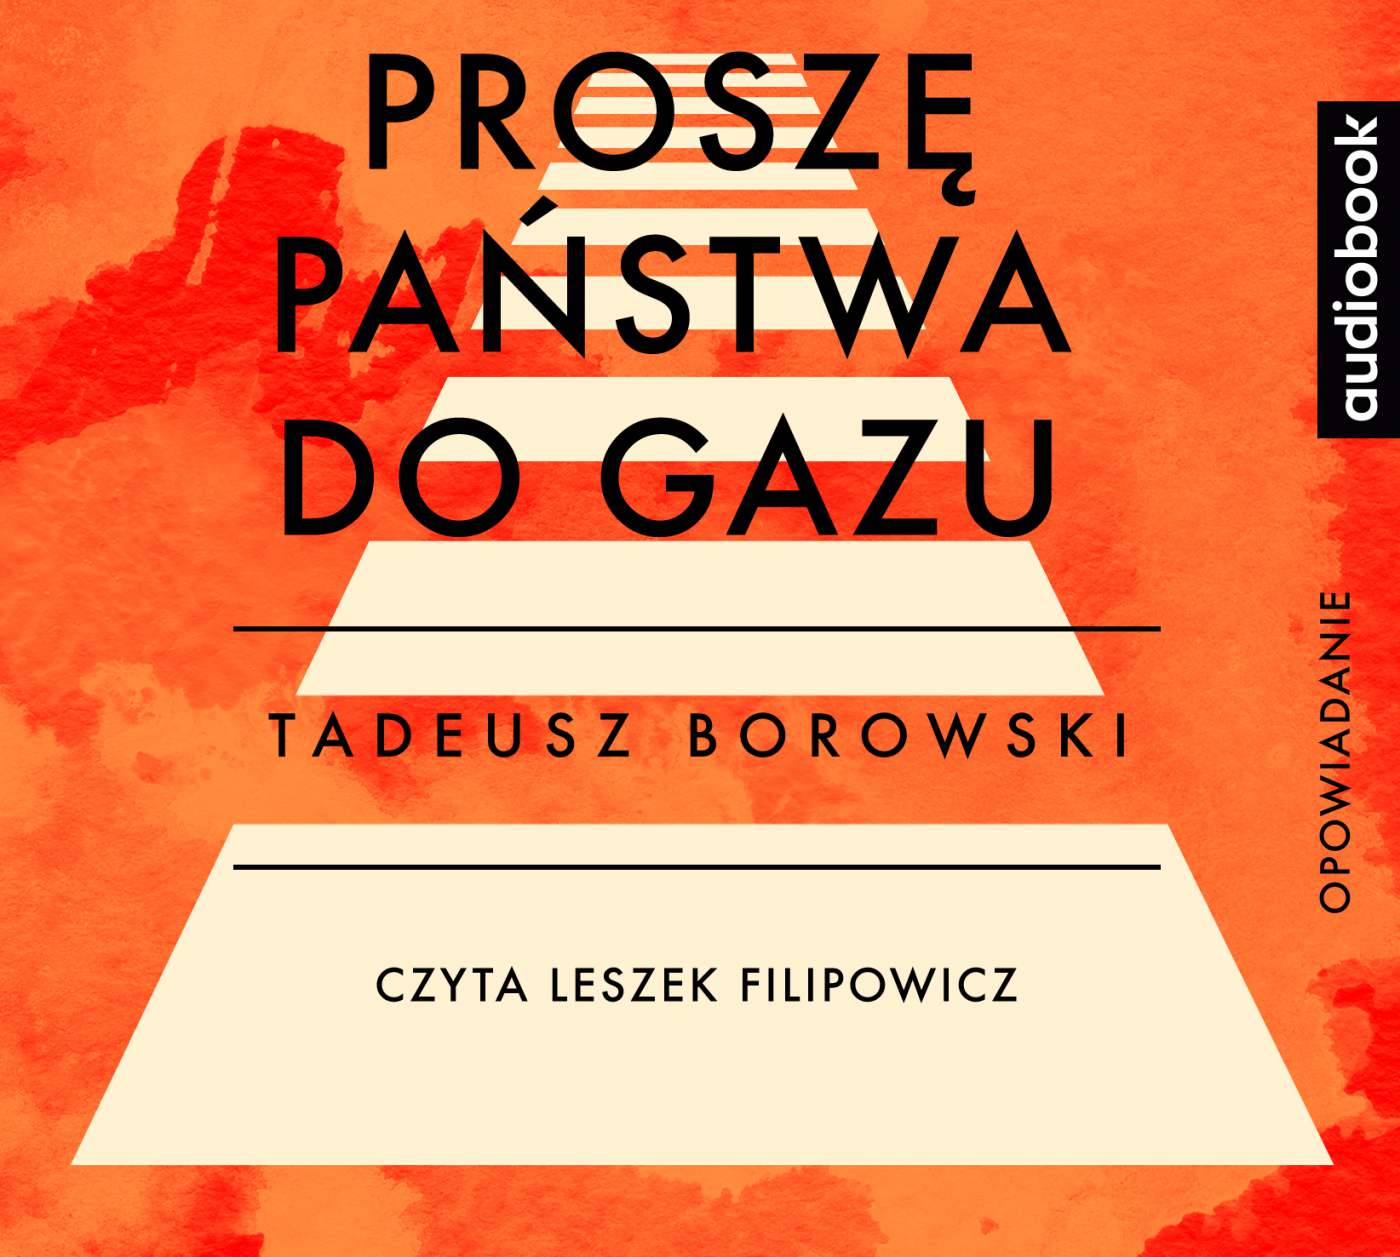 Proszę Państwa Do Gazu Kanada Audiobook Proszę państwa do gazu, Tadeusz Borowski - Virtualo.pl